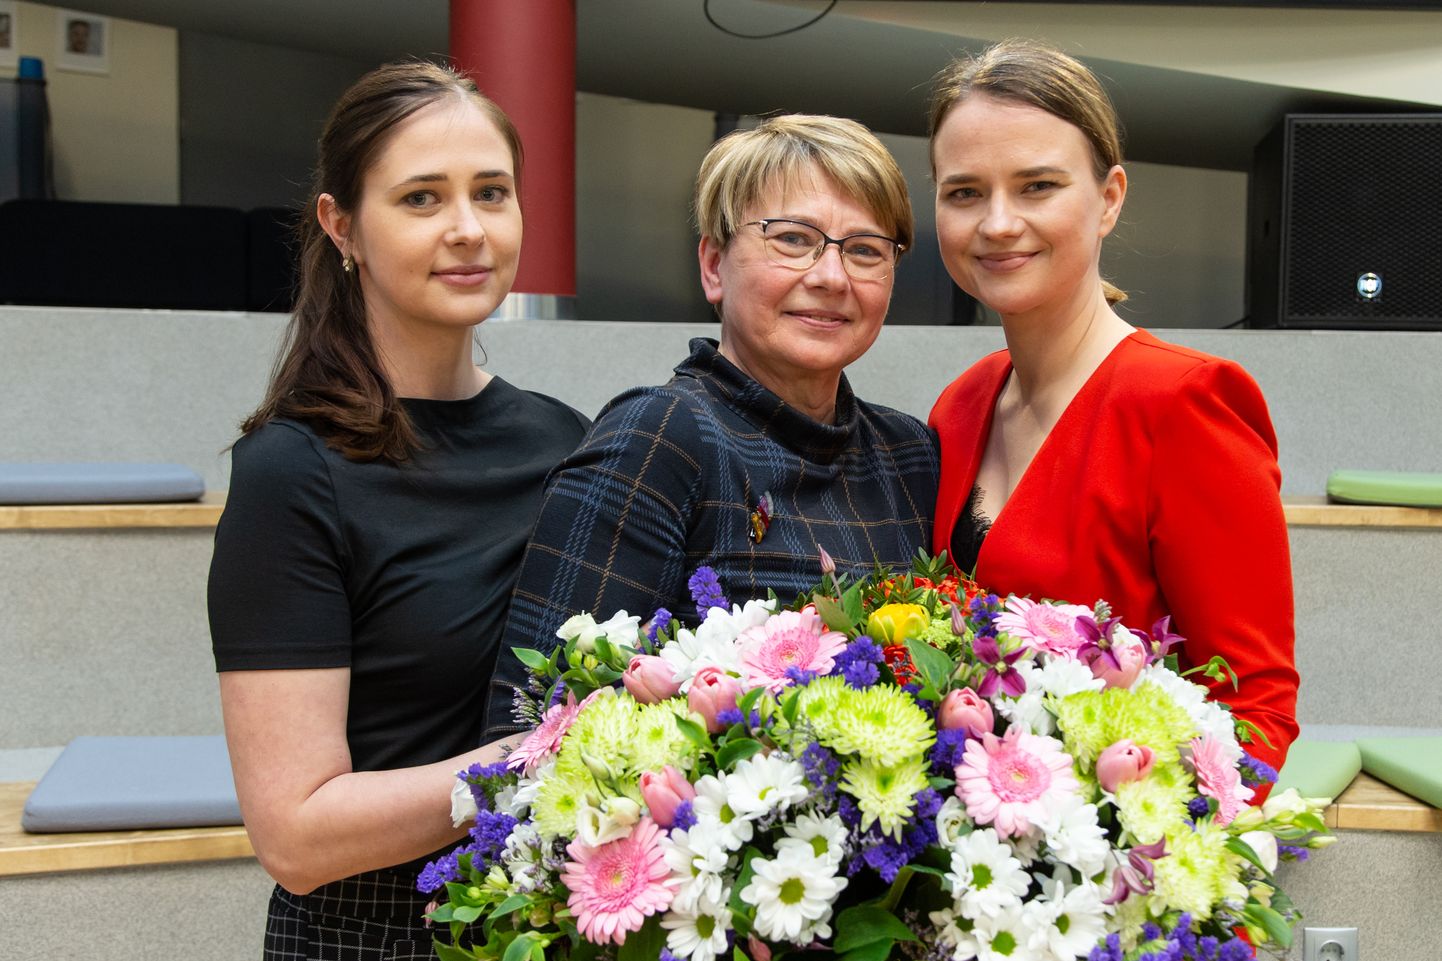 Tänavust Eesti aasta ema Ulvi Vilumetsa olid tiiitli pälvimisest teadasaamise hetkel Jõhvi gümnaasiumis õnnitlemas ka kaks tütart: Maarja Raja ja Virve Linder.